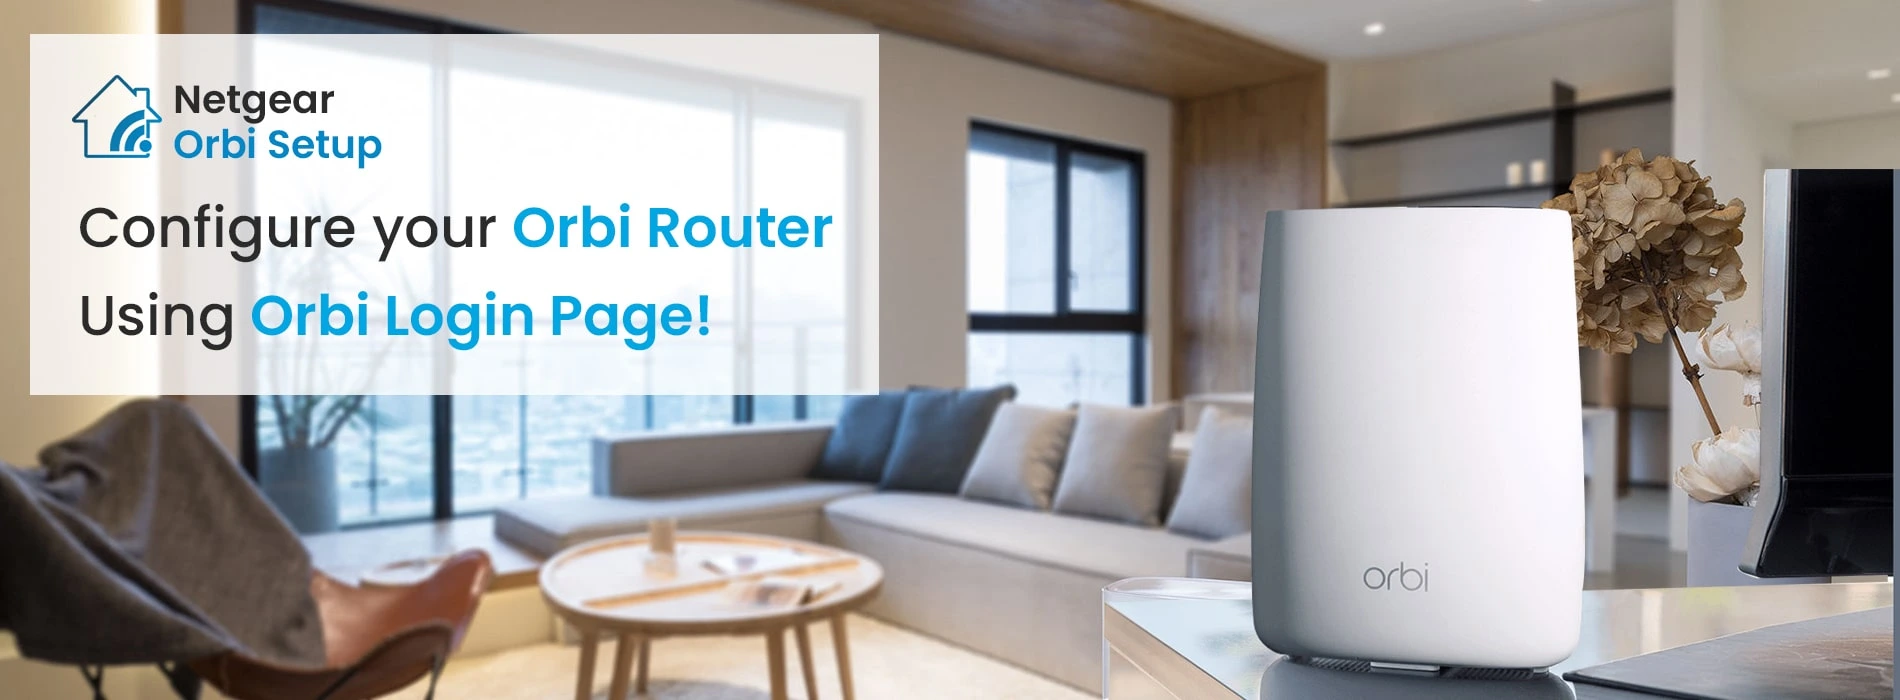 Configure netgear router